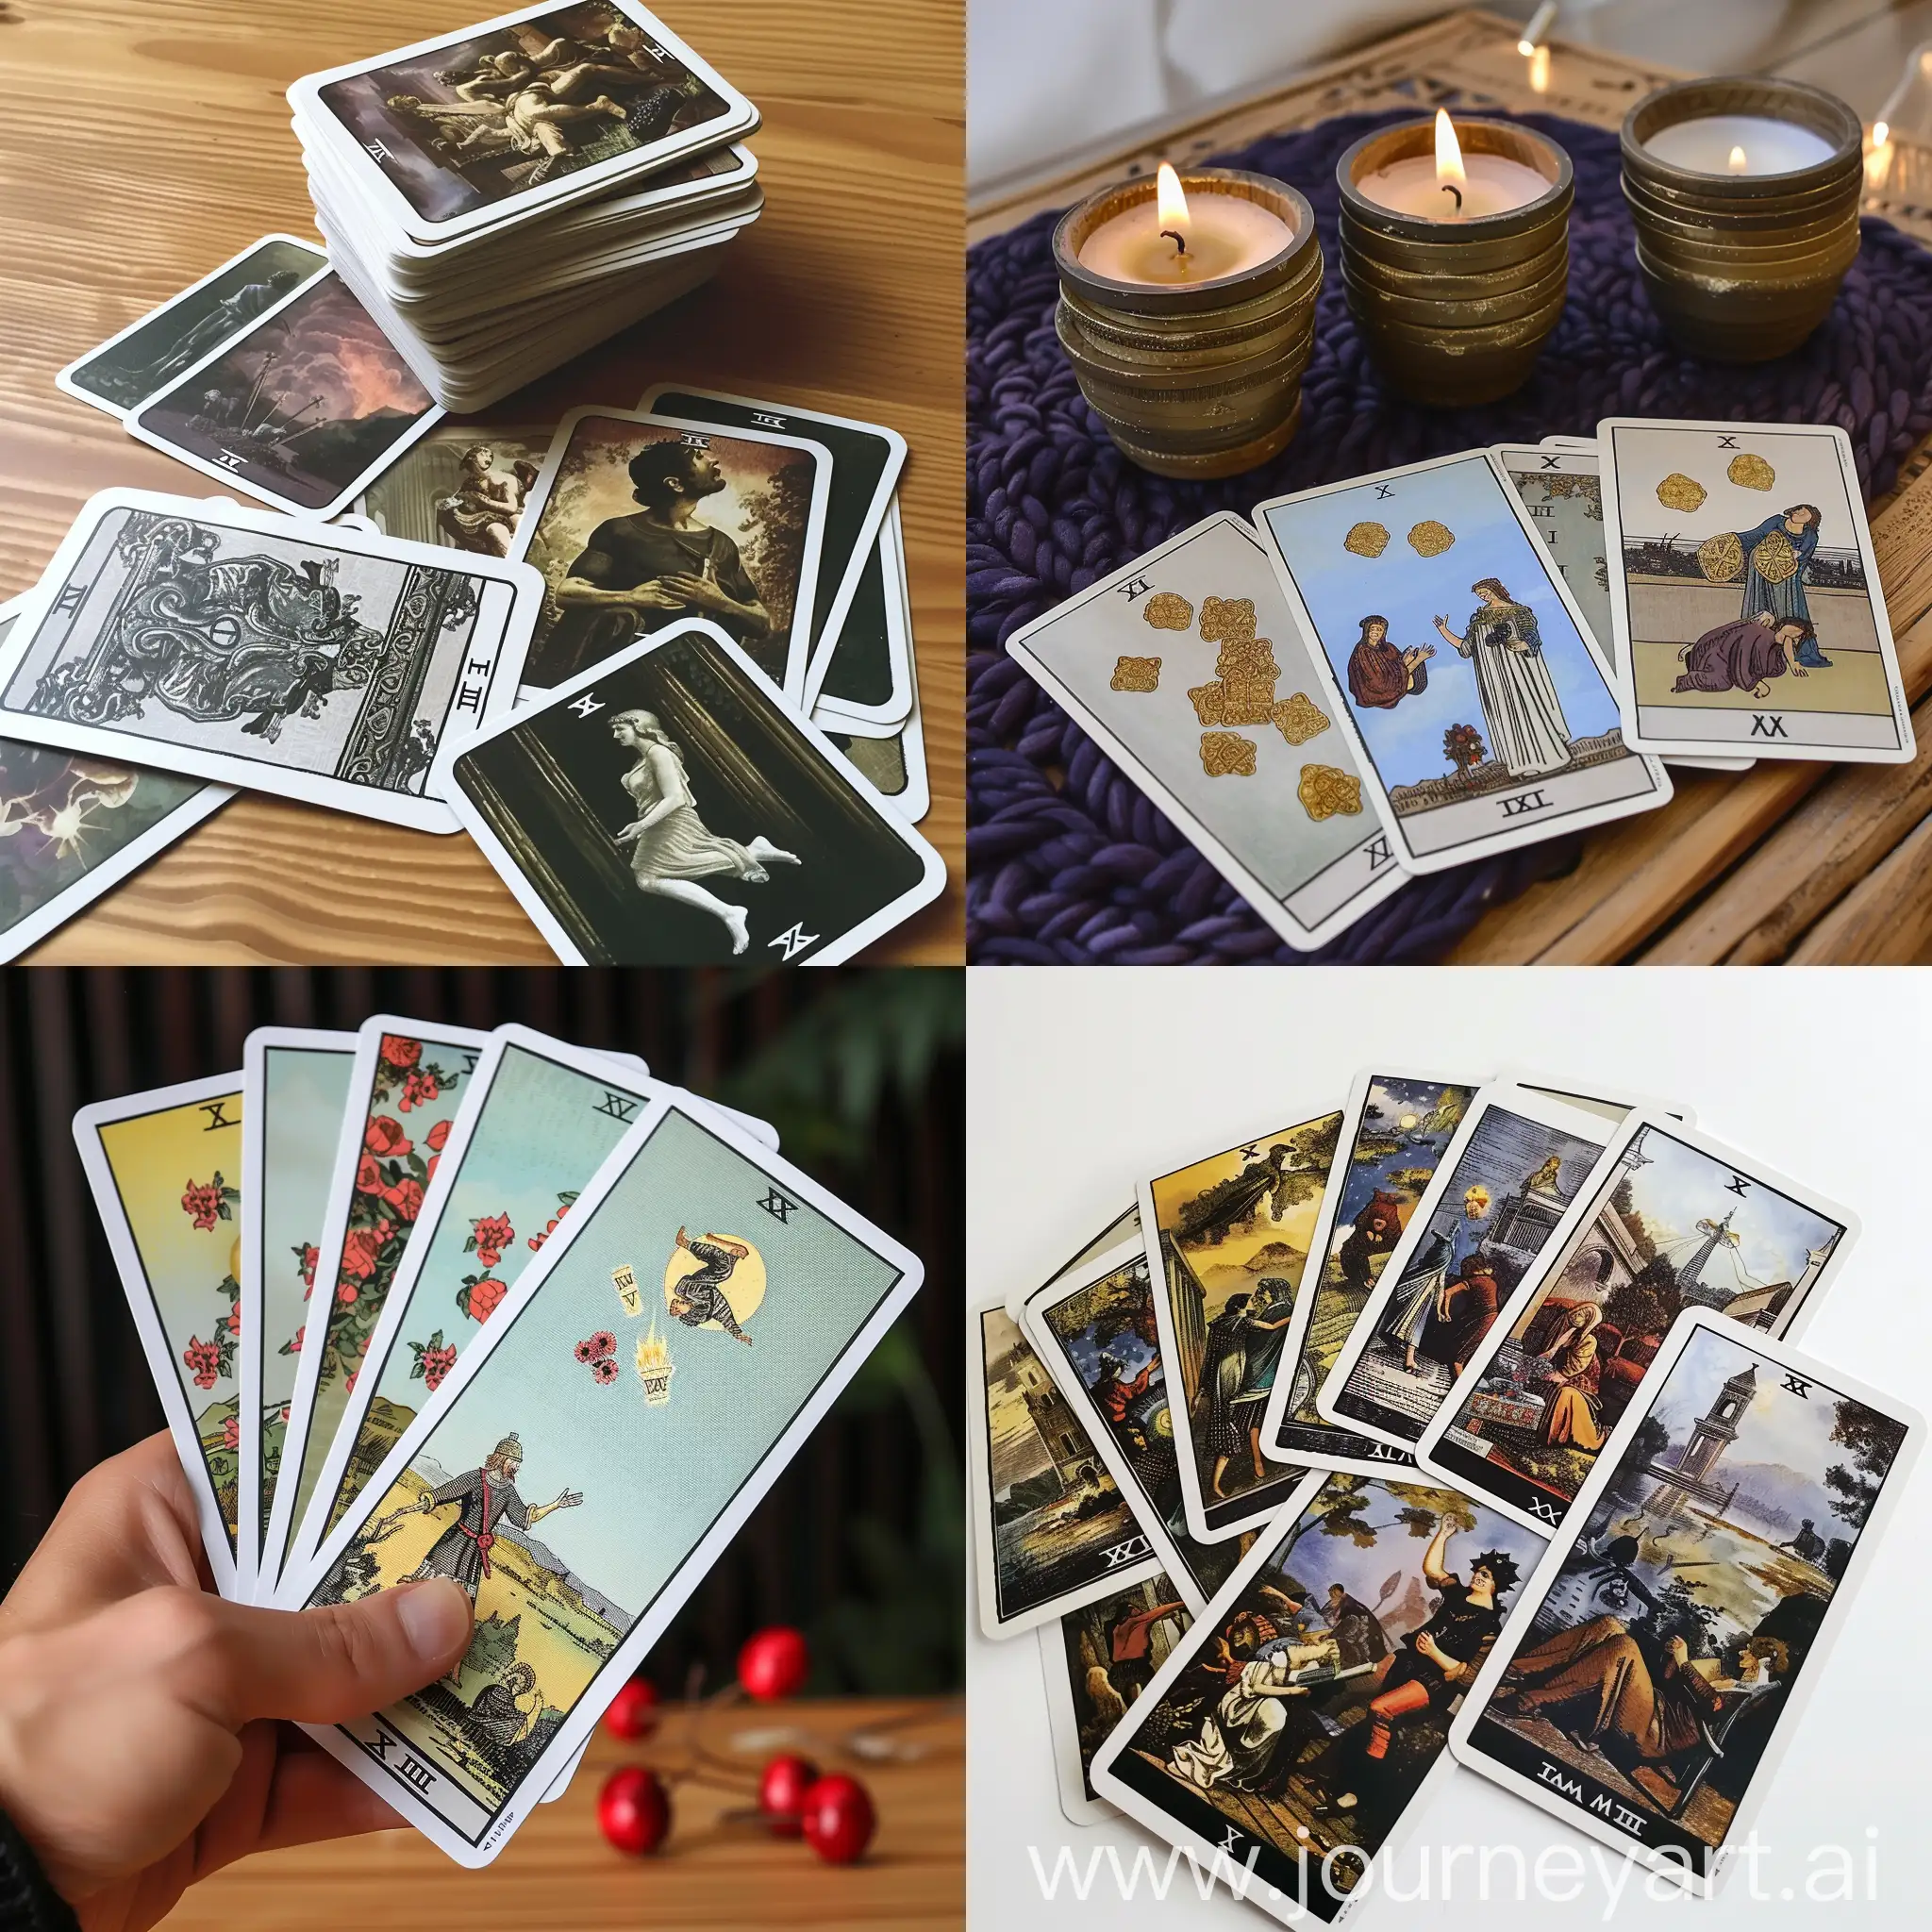 Tarot-Cards-Spread-on-Table